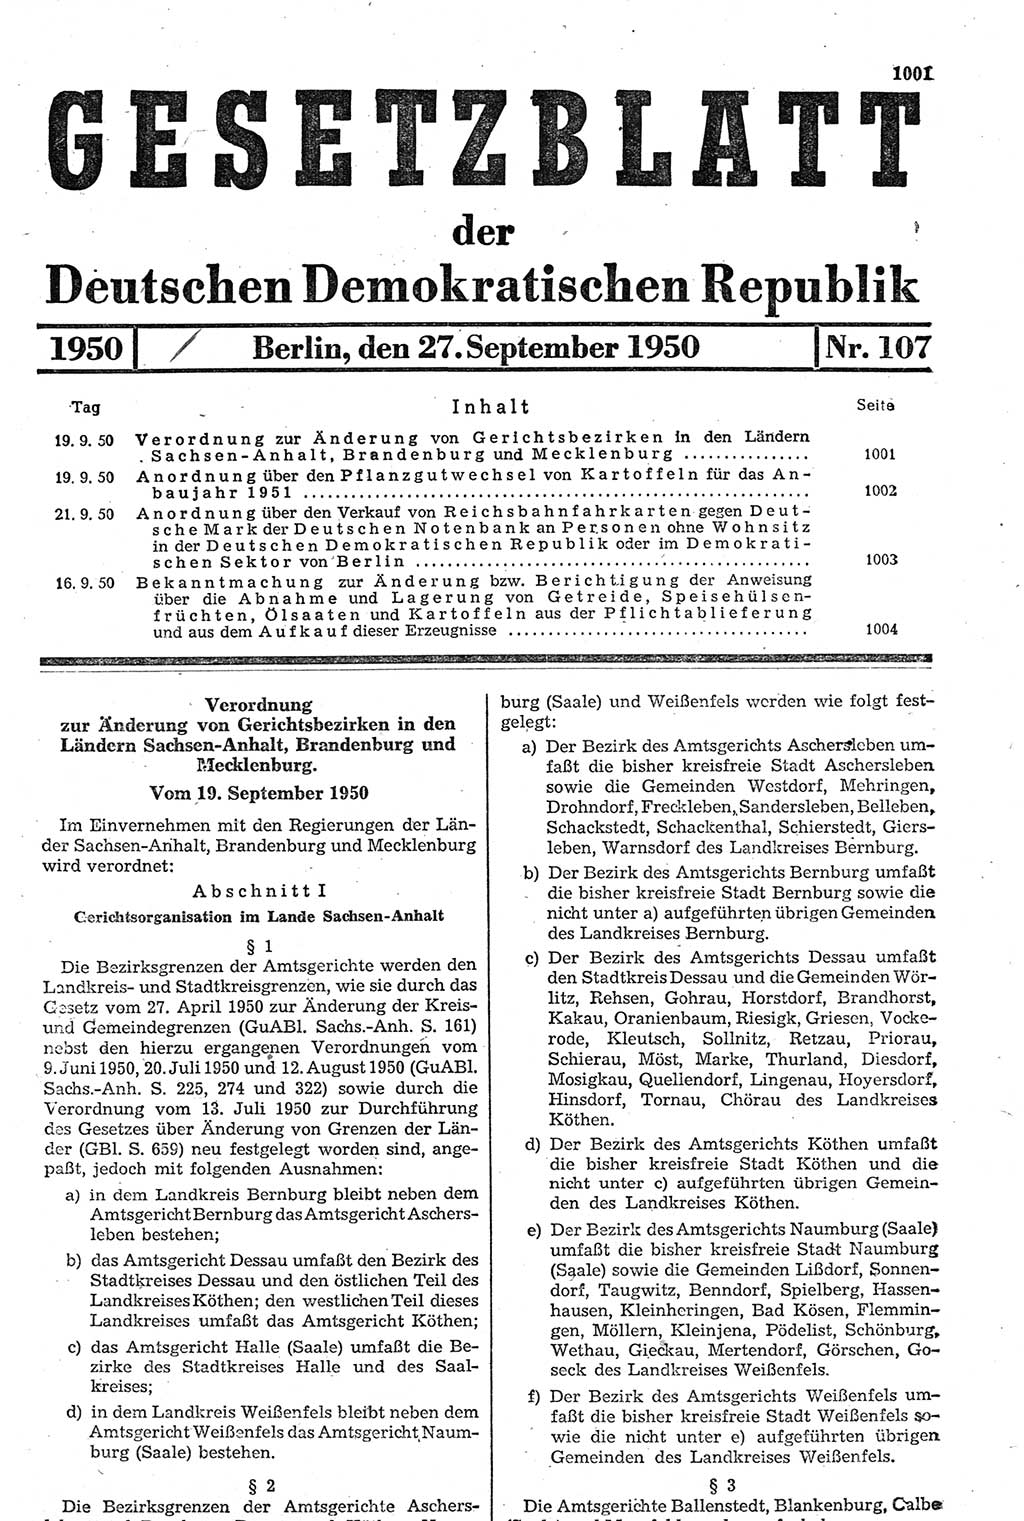 Gesetzblatt (GBl.) der Deutschen Demokratischen Republik (DDR) 1950, Seite 1001 (GBl. DDR 1950, S. 1001)